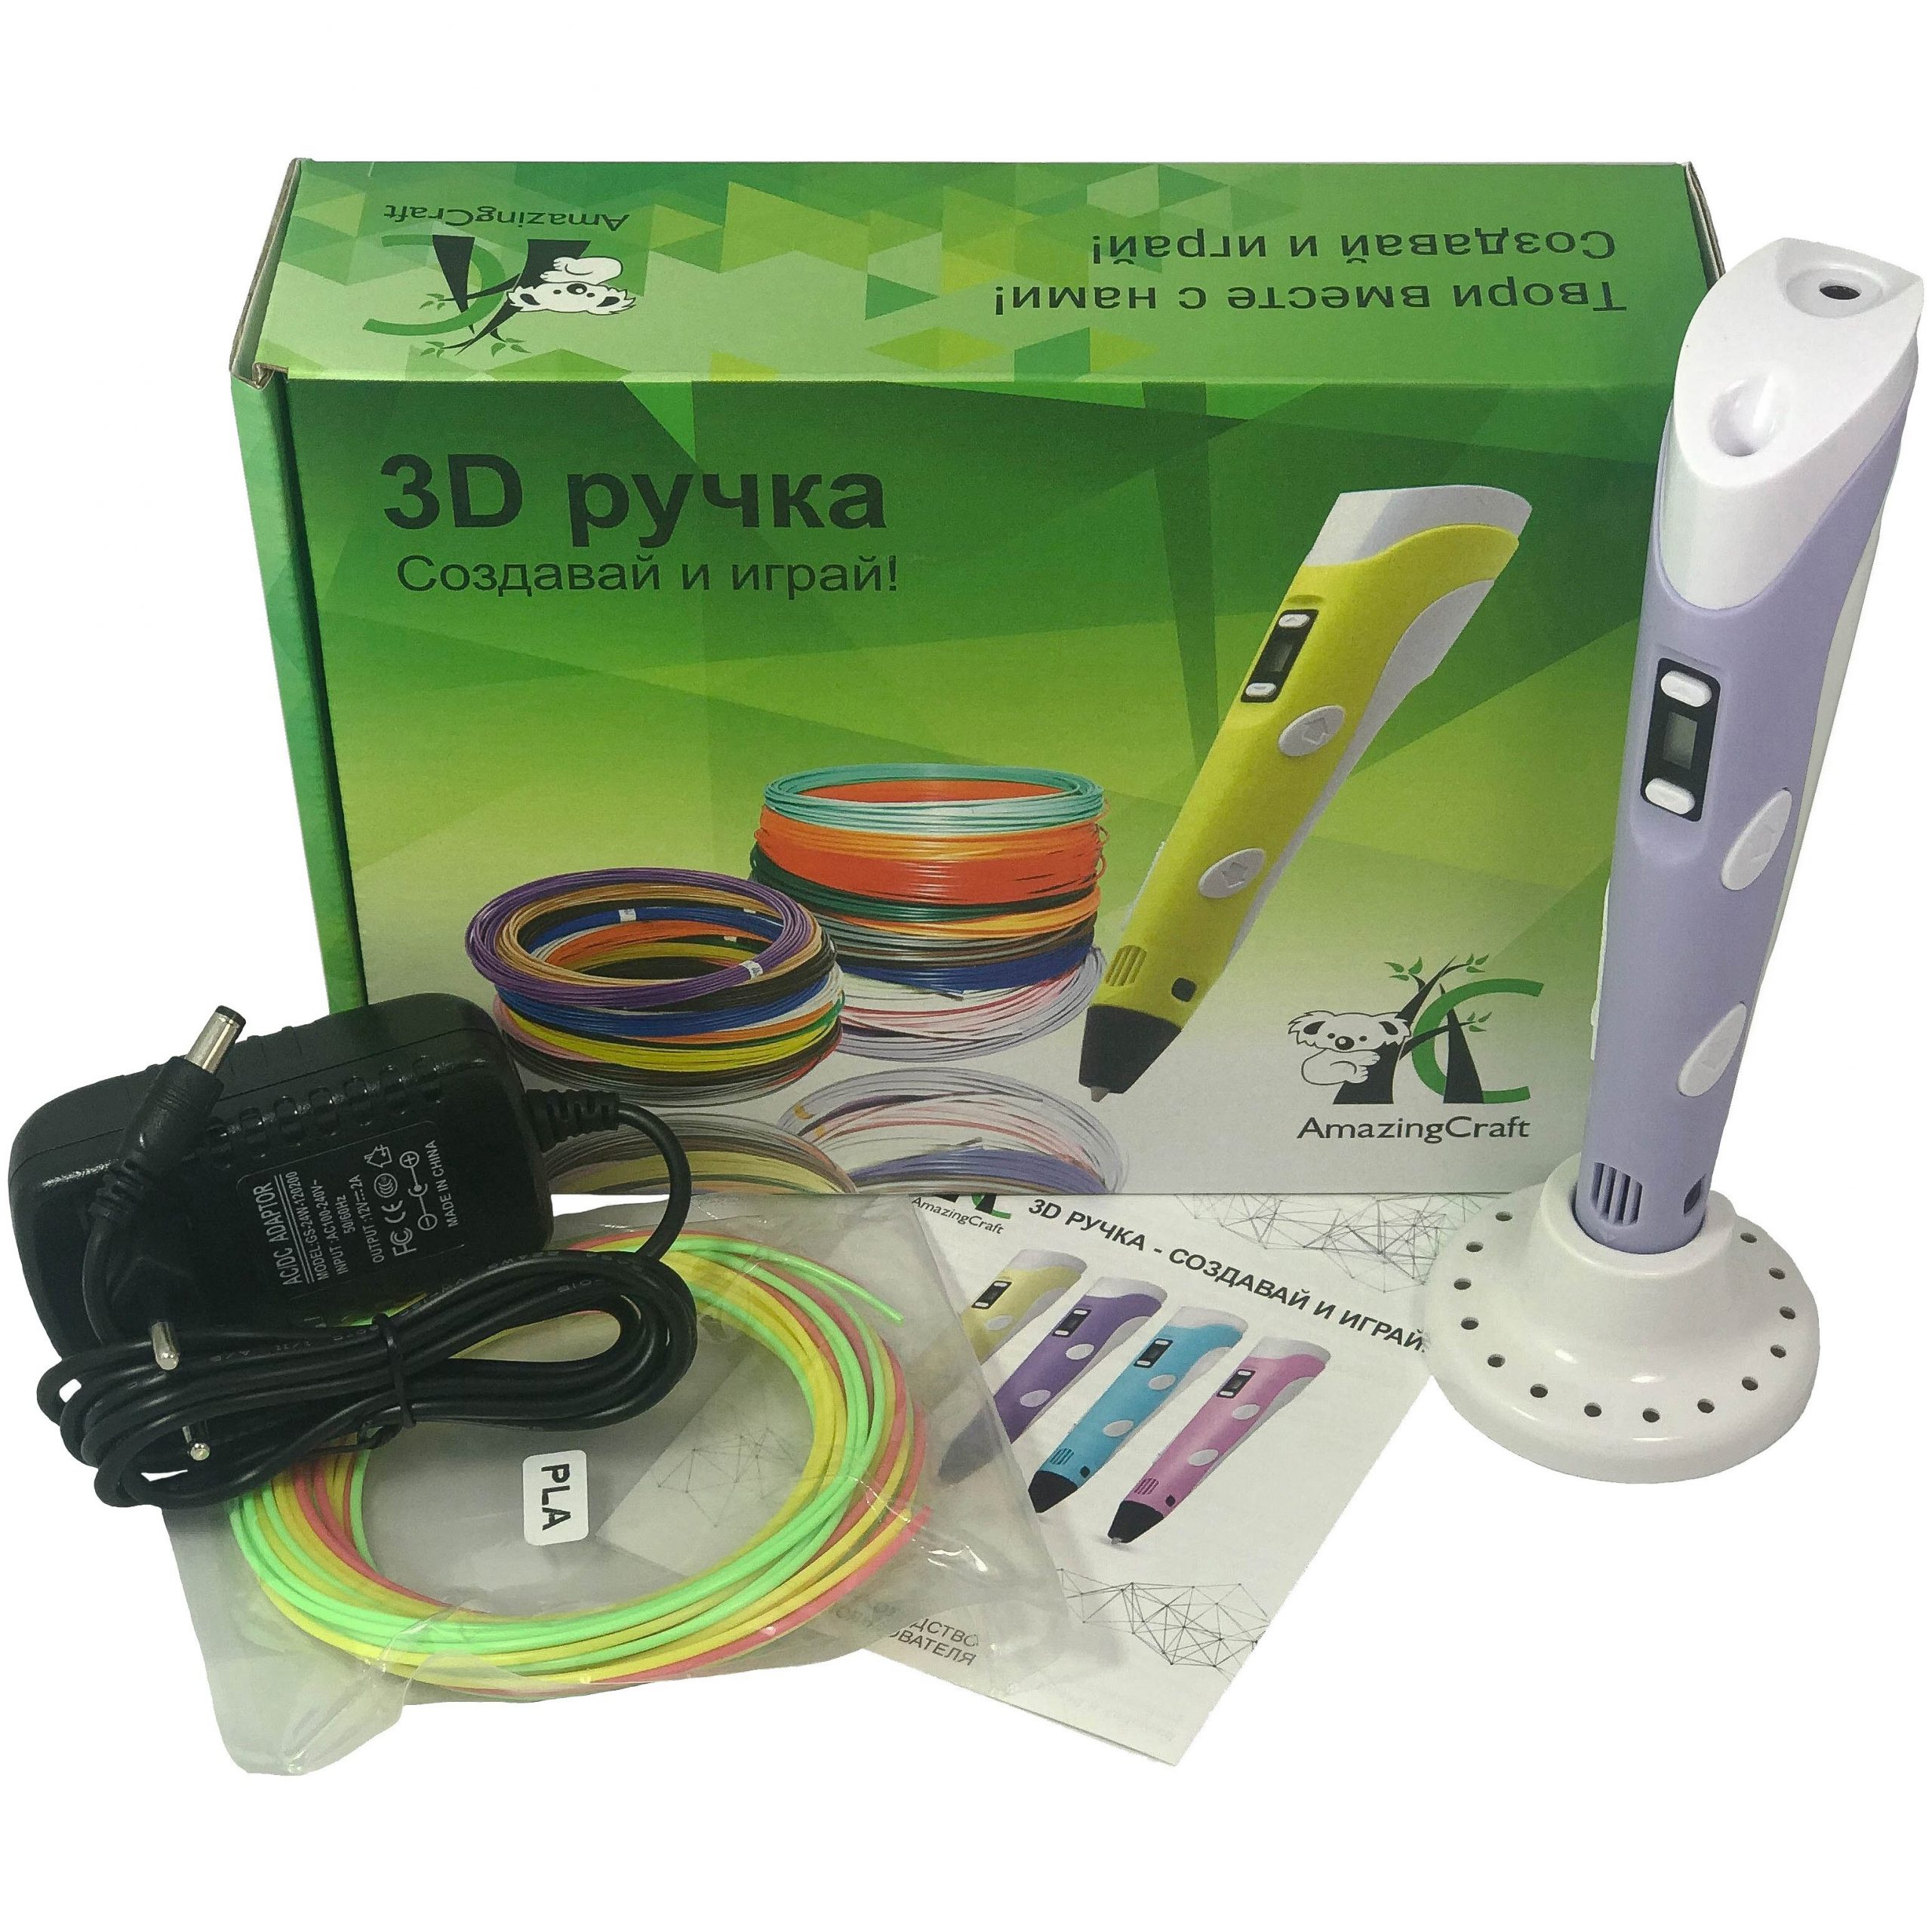 3Д ручка AmazingCraft сиреневая для ABS и PLA пластика с дисплеем 3D ручка для детей гарантия 1 год